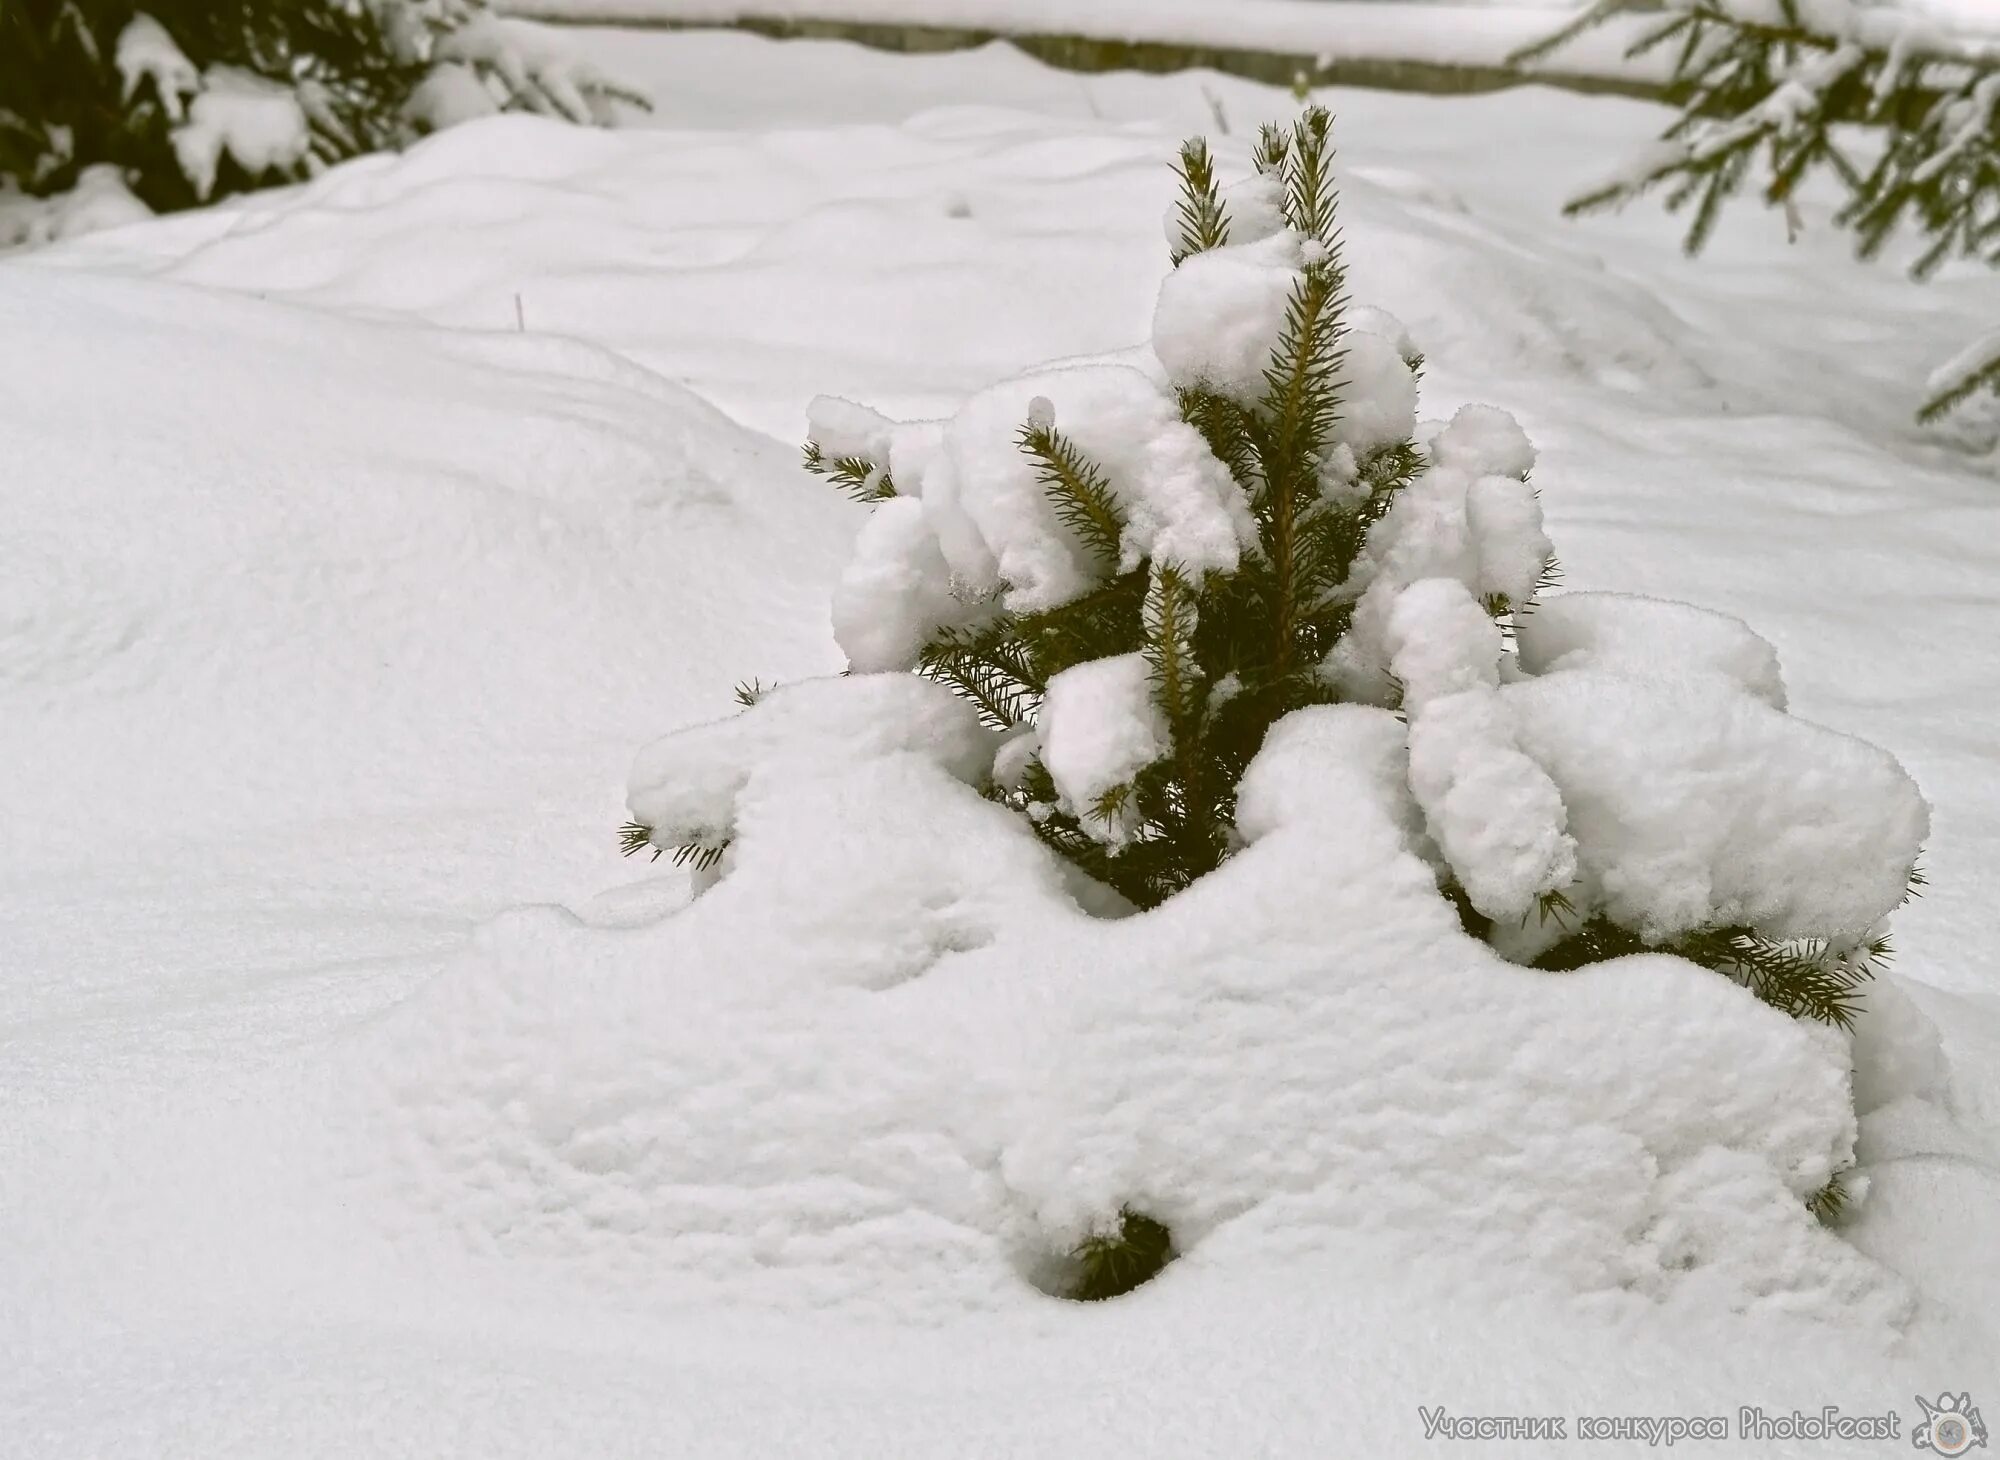 Где прячется снег. Маленькой ёлочке холодно зимой фото. Фотография ёлочке холодно зимой. Картинка маленькой елочке холодно зимой. В глубокий снег спрятались маленькие елочки.